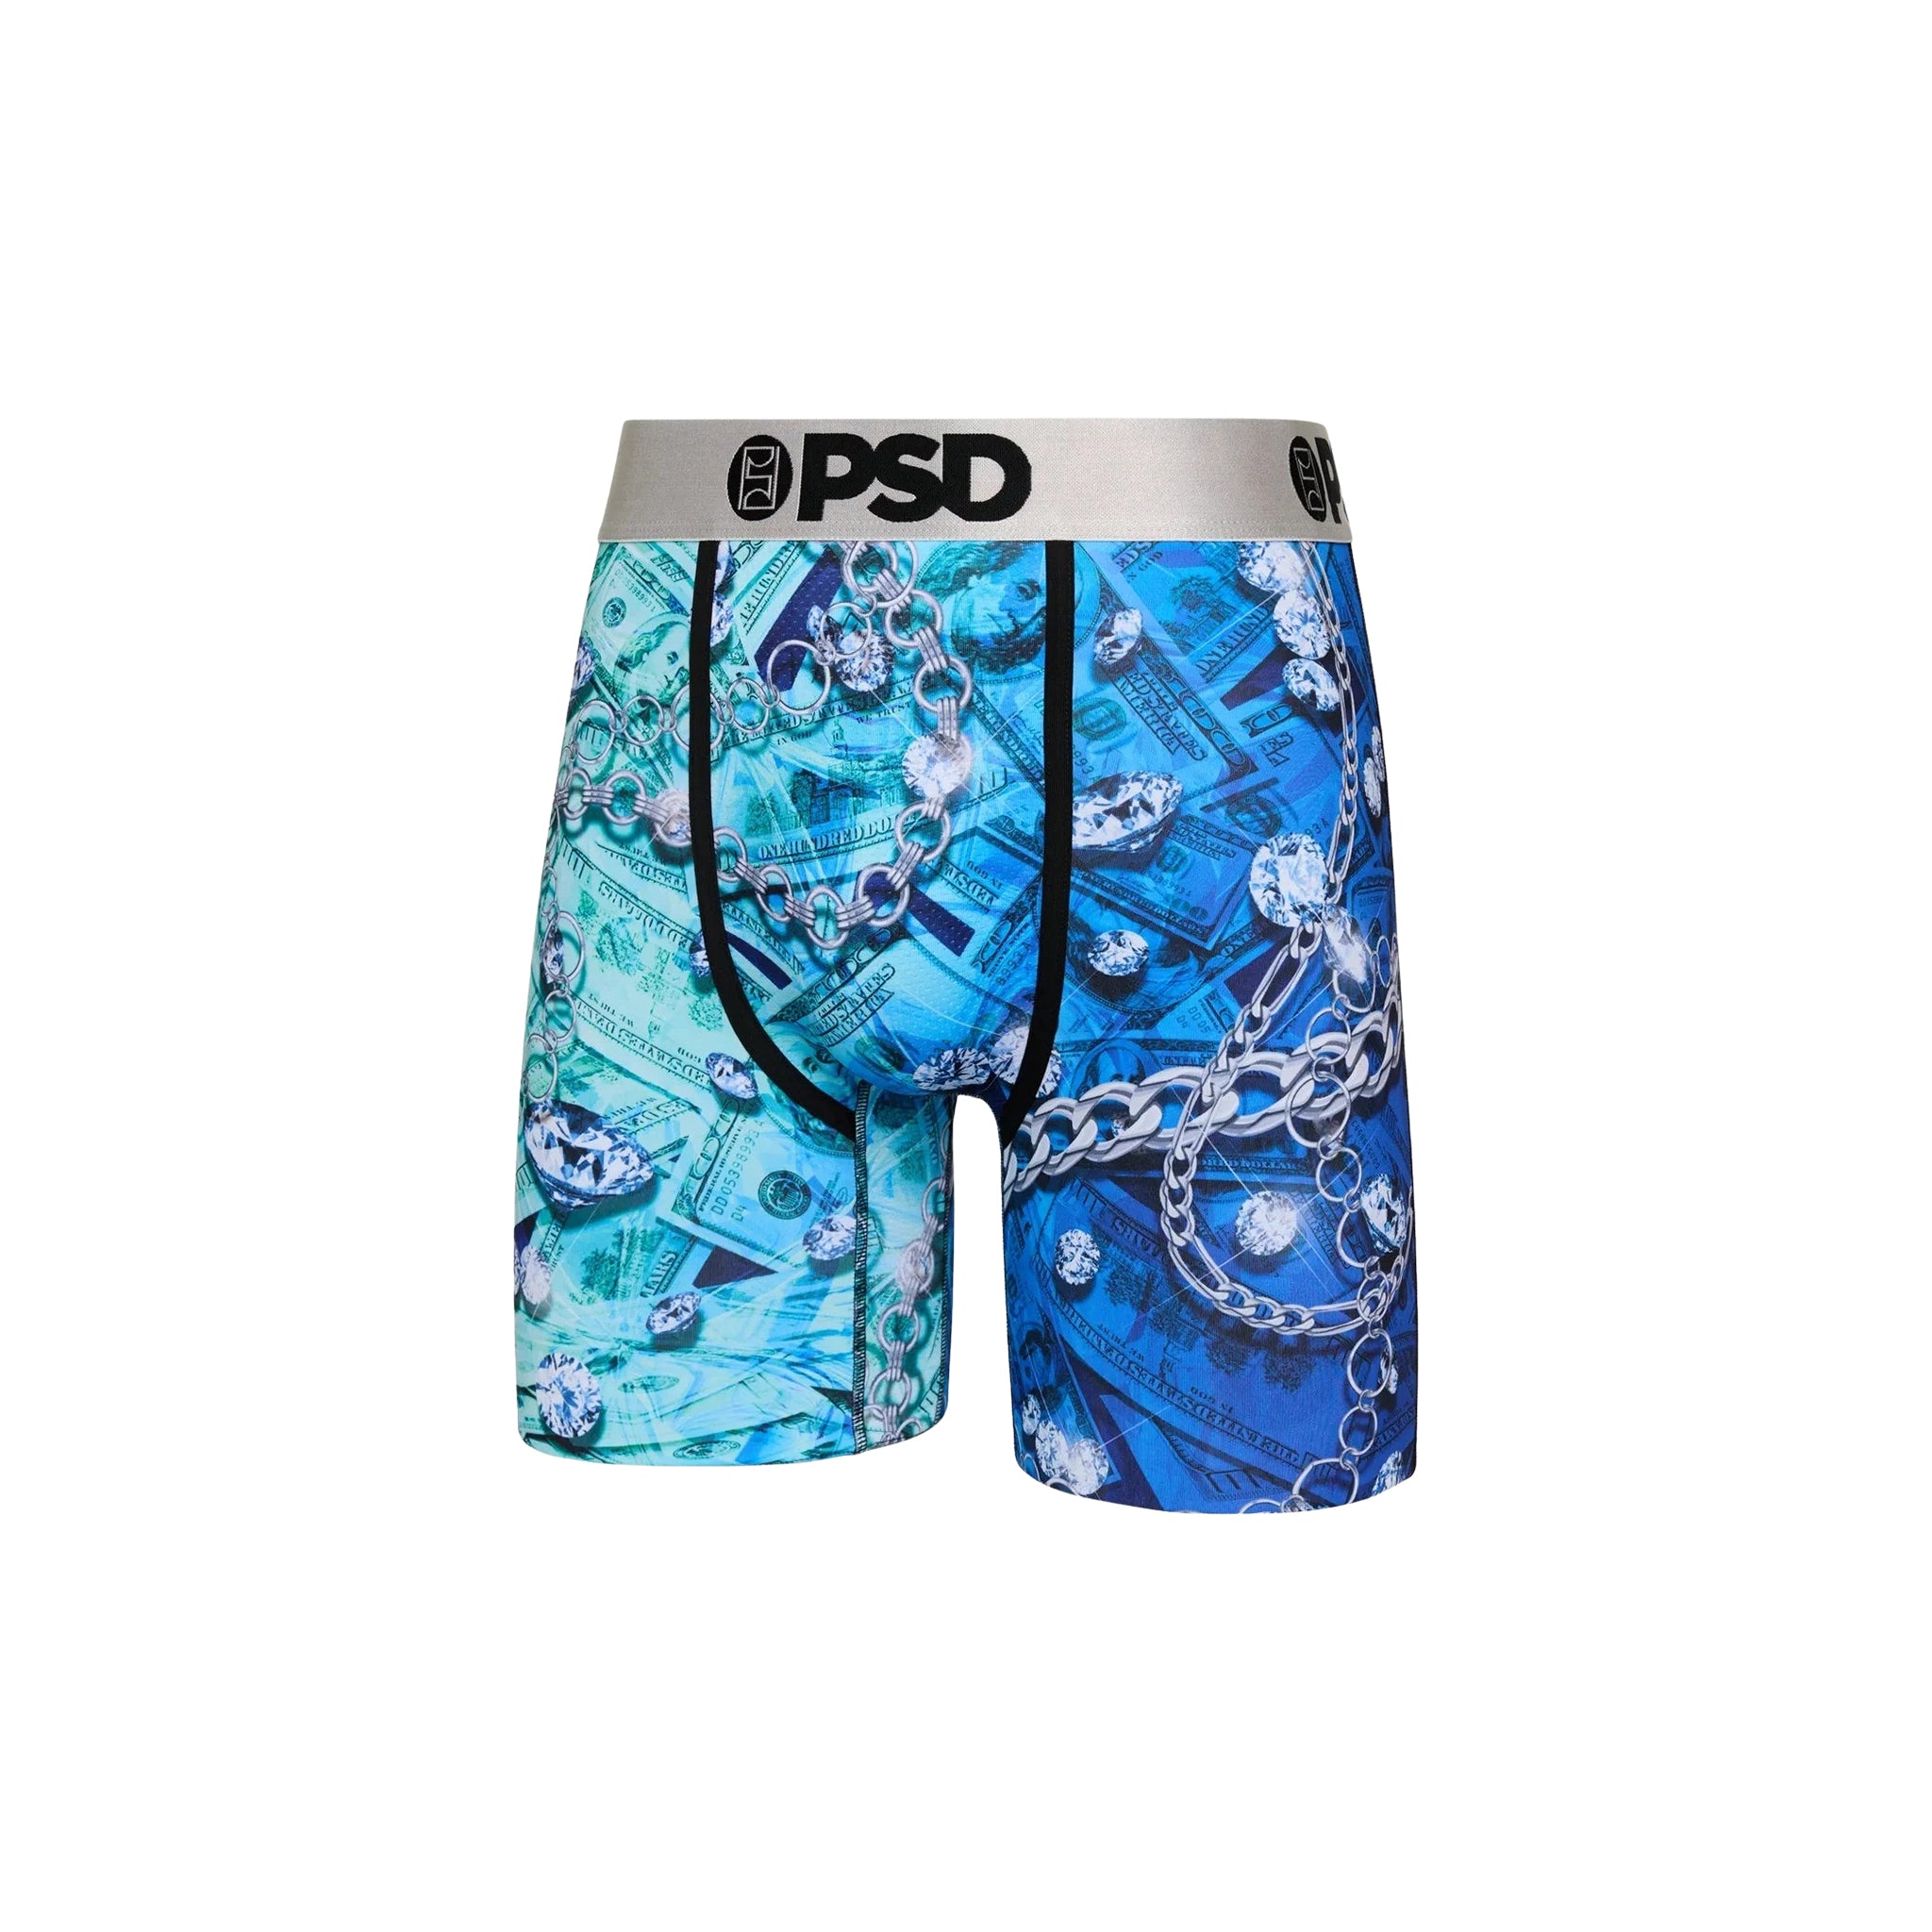 PSD "Icey" Underwear